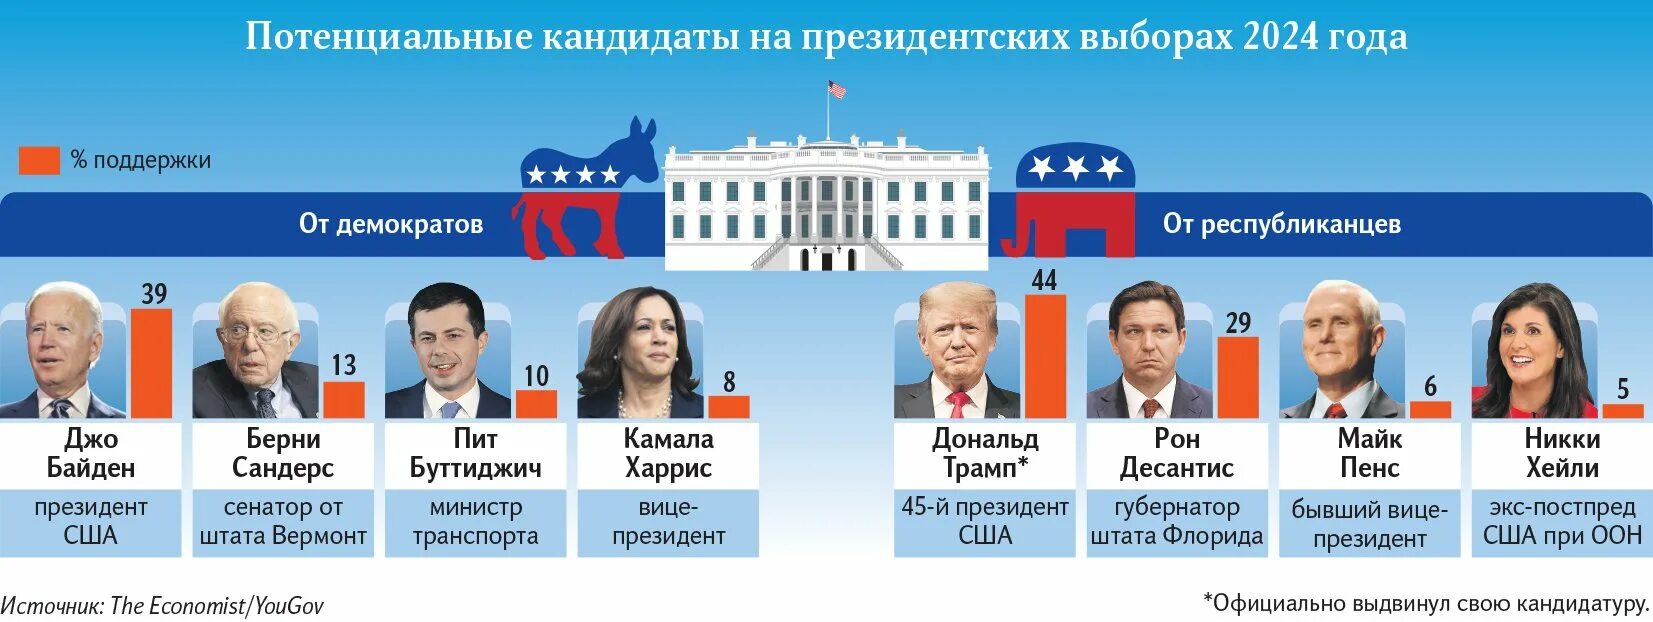 Когда выборы в россии 2024 дата. Выборы президента США 2024. Выборы 2024 кандидаты. Выборы в США 2024 кандидаты.